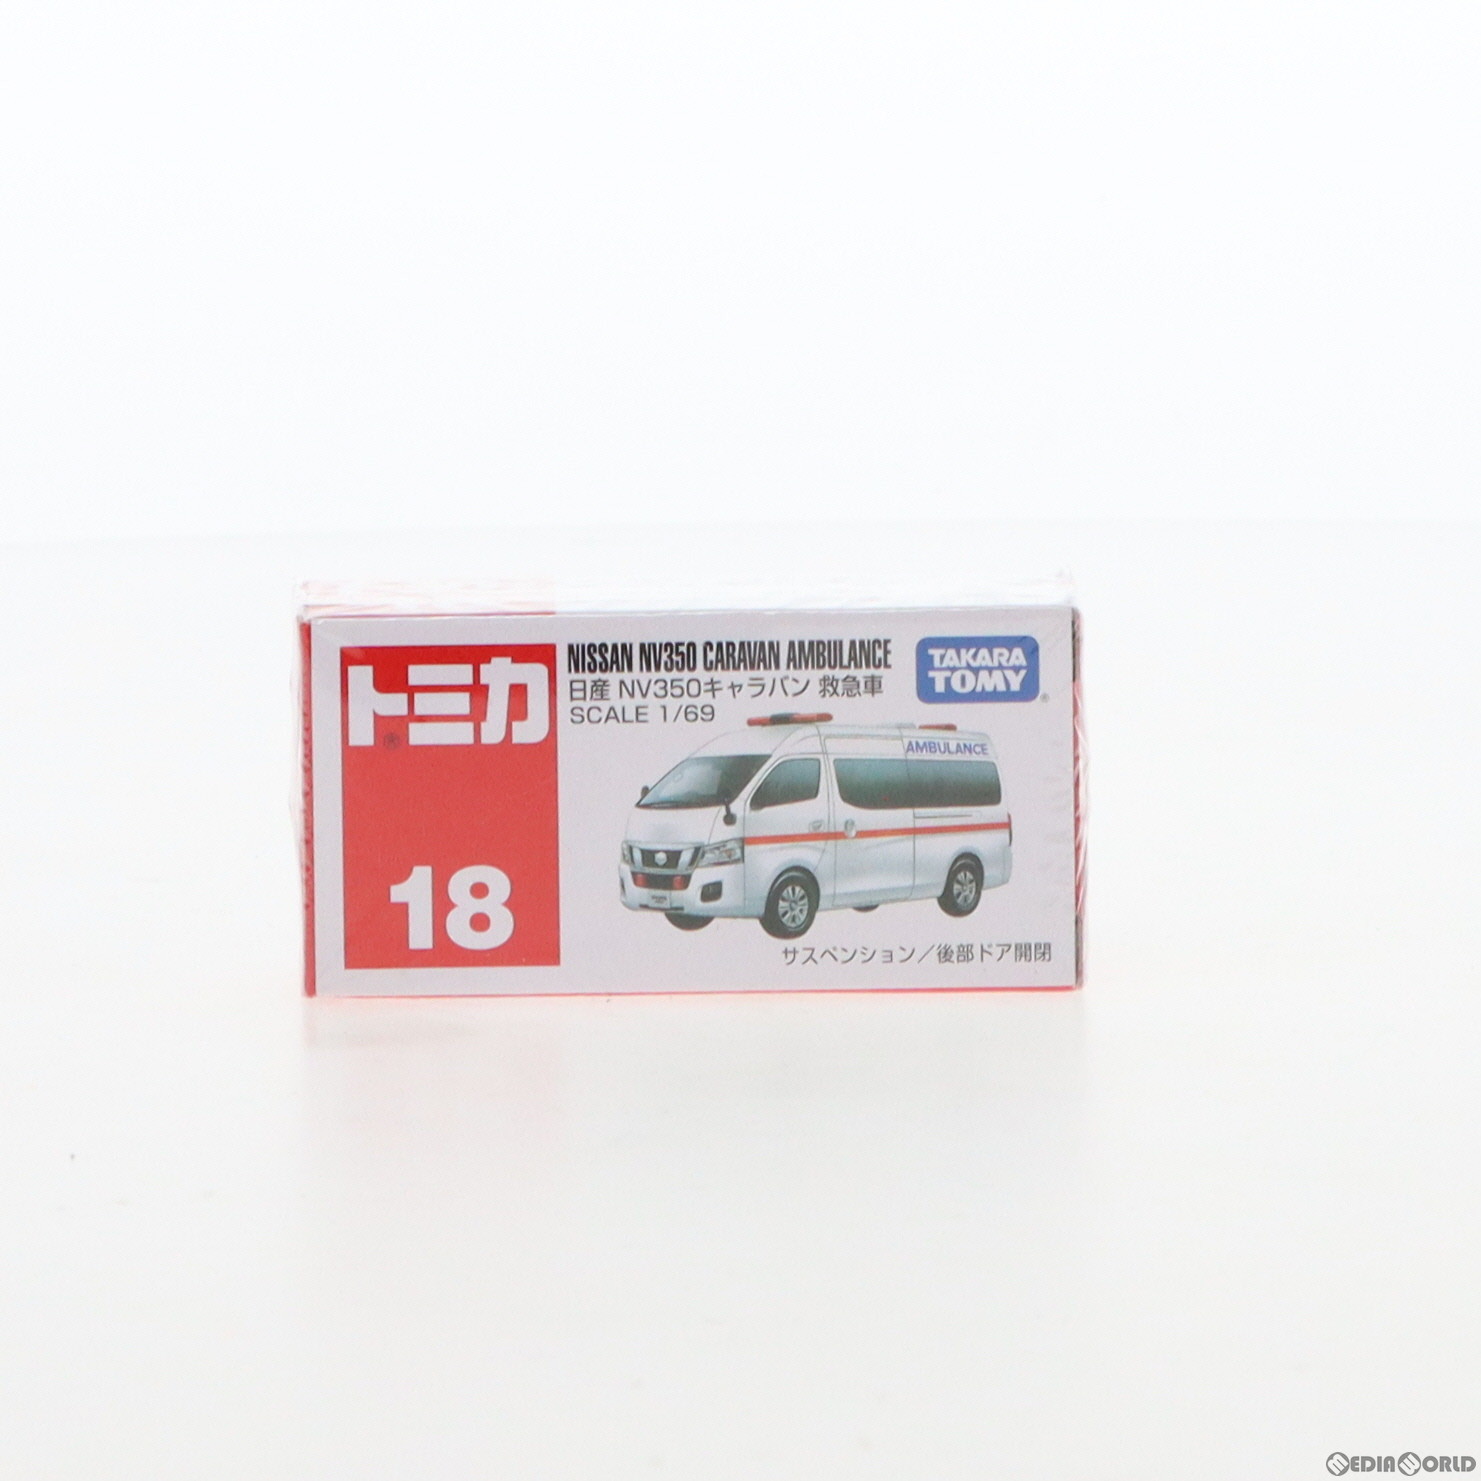 【新品】【お取り寄せ】[FIG]トミカ 日産 NV350 キャラバン 救急車(ホワイト/赤箱) 1/69 完成品 ミニカー(No.18) タカラトミー(20130720)